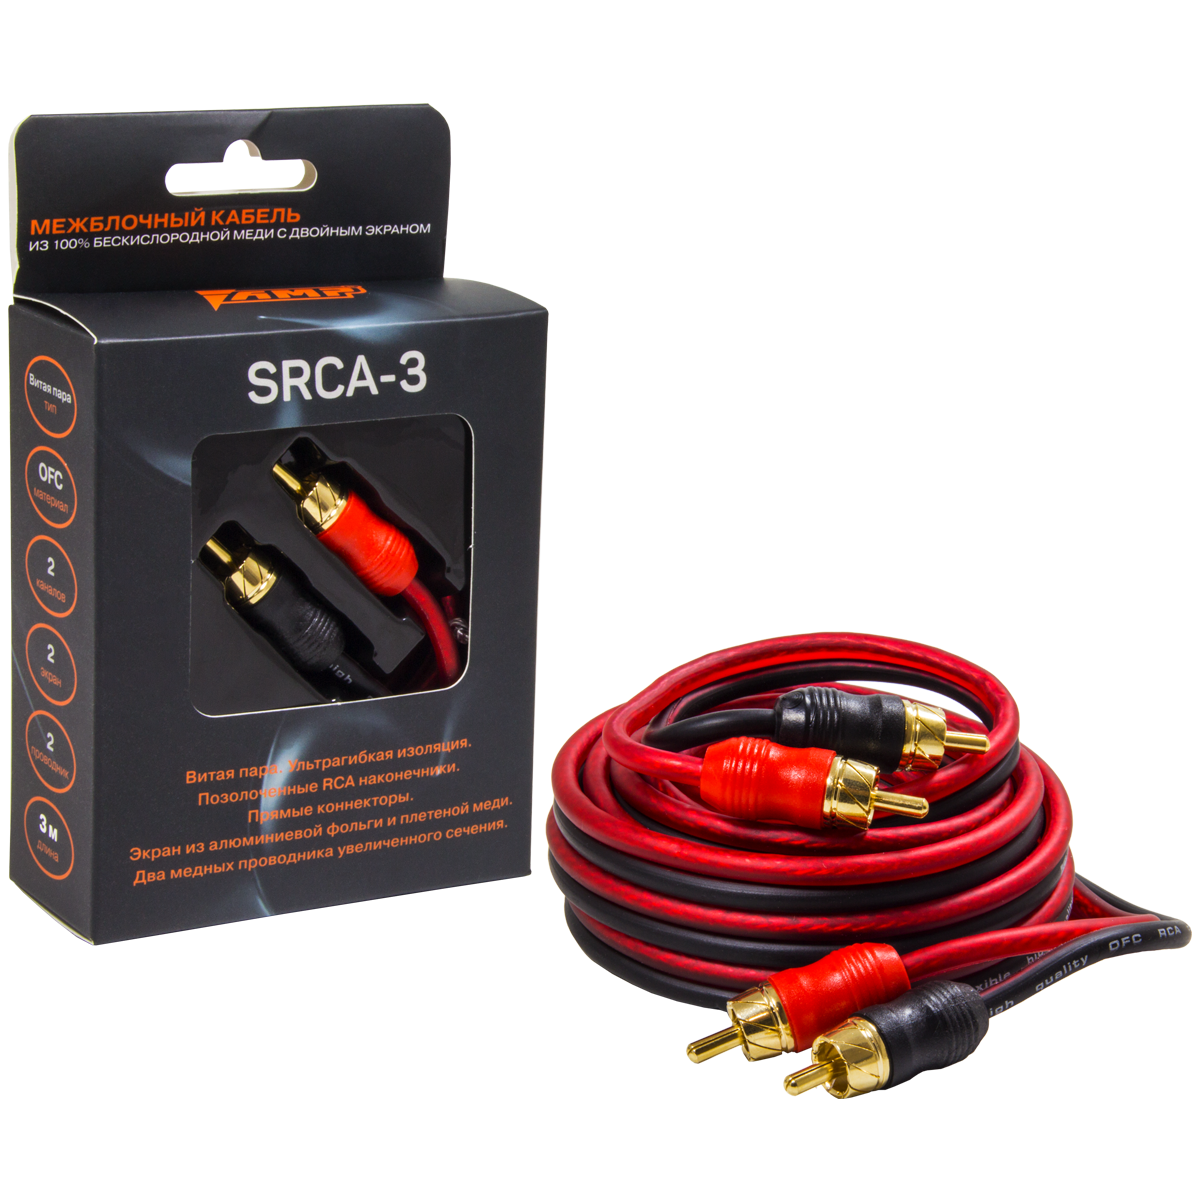 Провод соединительный AMP SRCA-3 Межблочный кабель-медь (3м) купить в интернет магазине AMPGROUP.  Провод соединительный AMP SRCA-3 Межблочный кабель-медь (3м)   цены, большой каталог, новинки.
